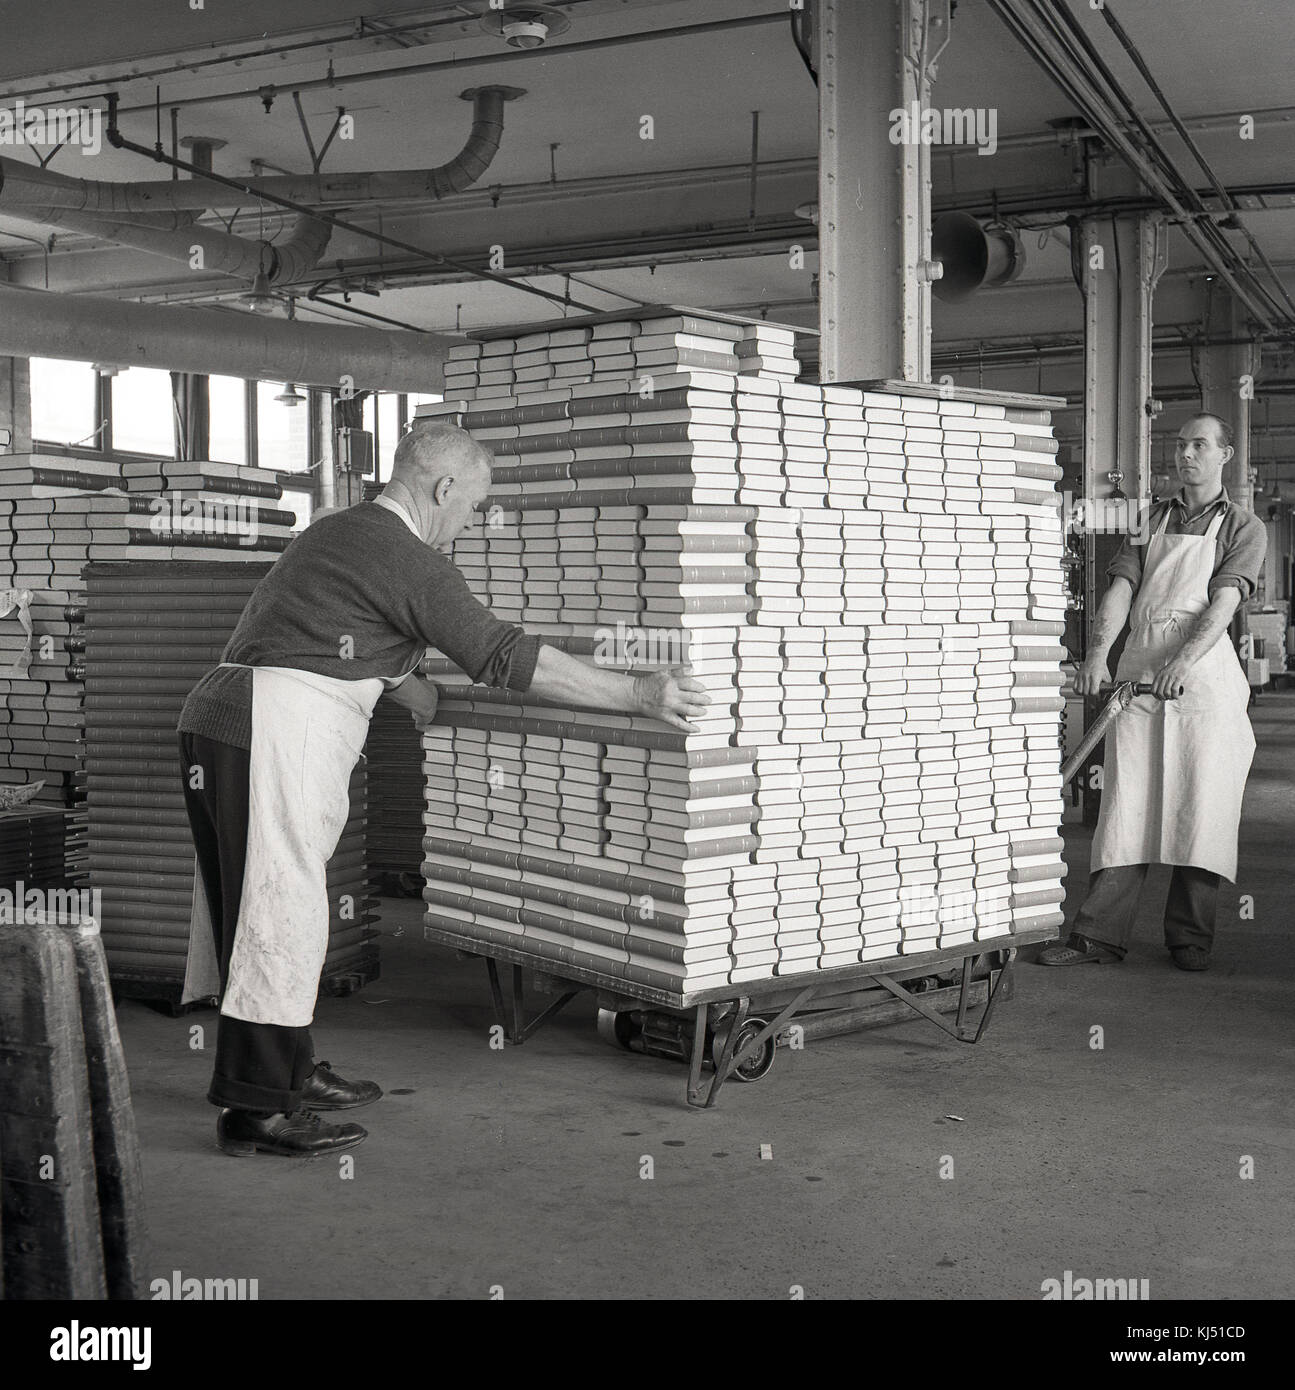 1950s, históricos, dos trabajadores varones Vestían delantales dentro de una unidad industrial o almacén, moviendo un grande y pesada carga de libros de tapa dura en una plataforma trolley, Inglaterra, Reino Unido. Foto de stock